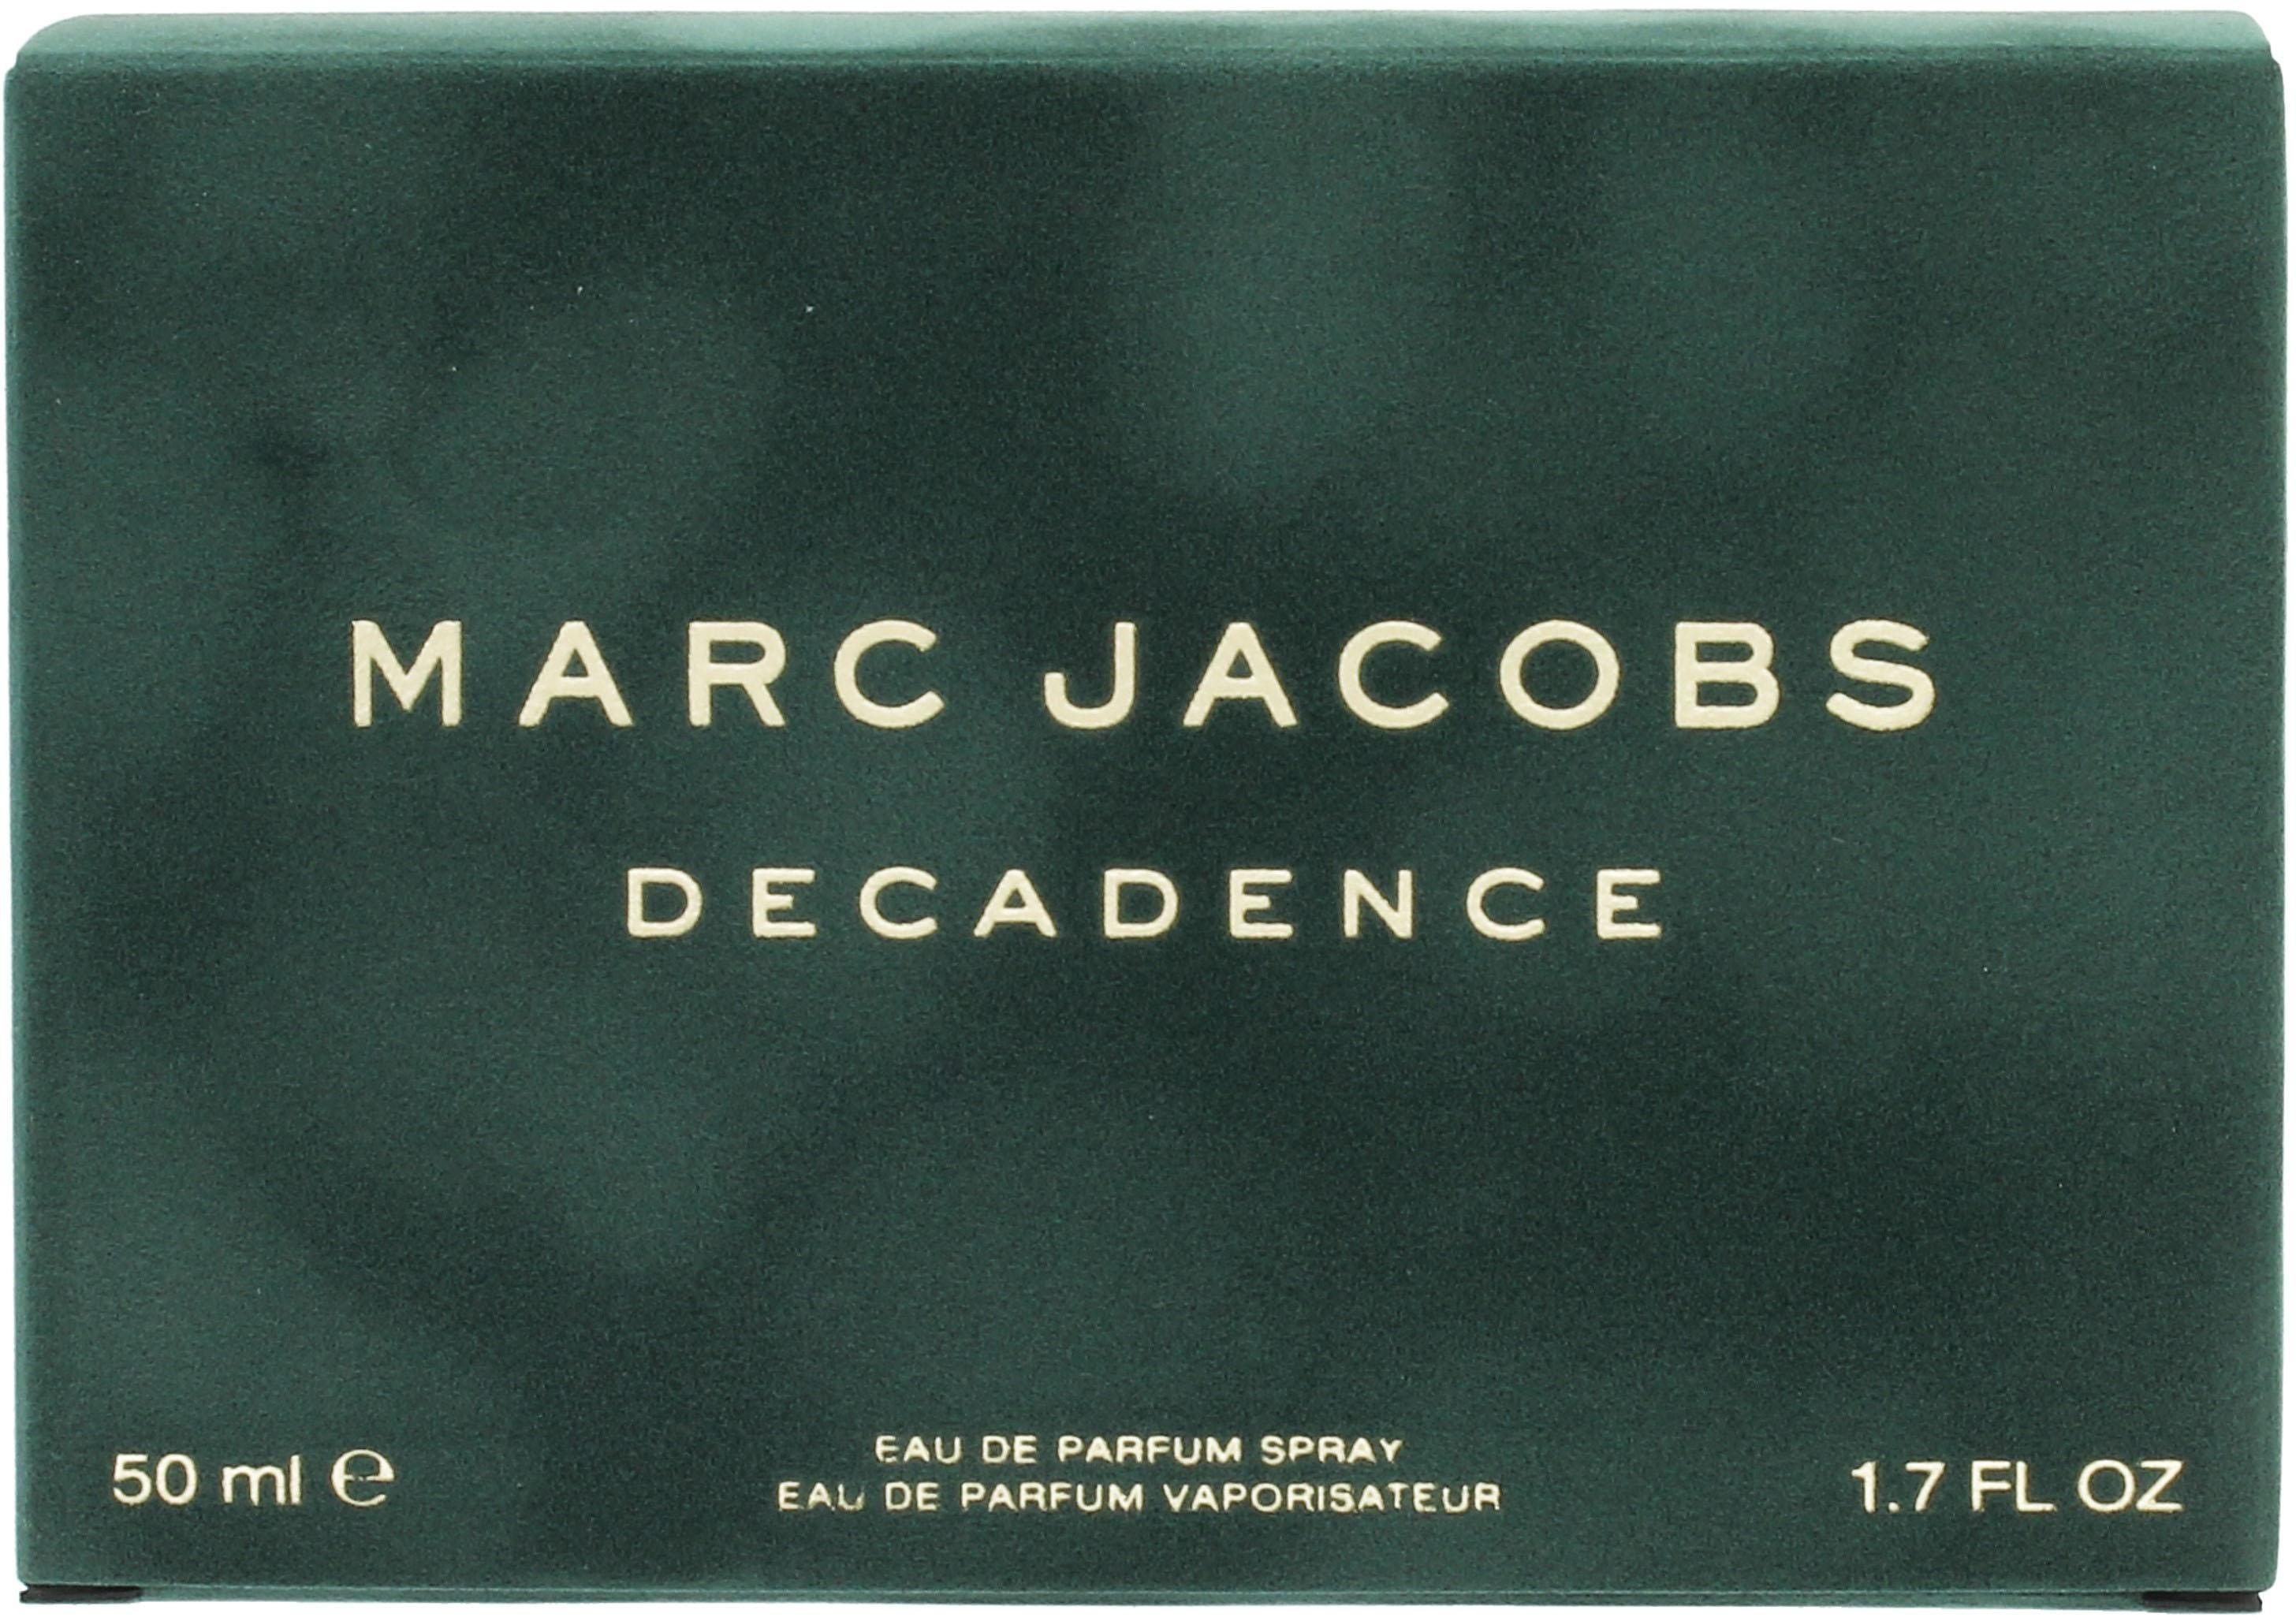 MARC JACOBS Eau de Parfum Decadence